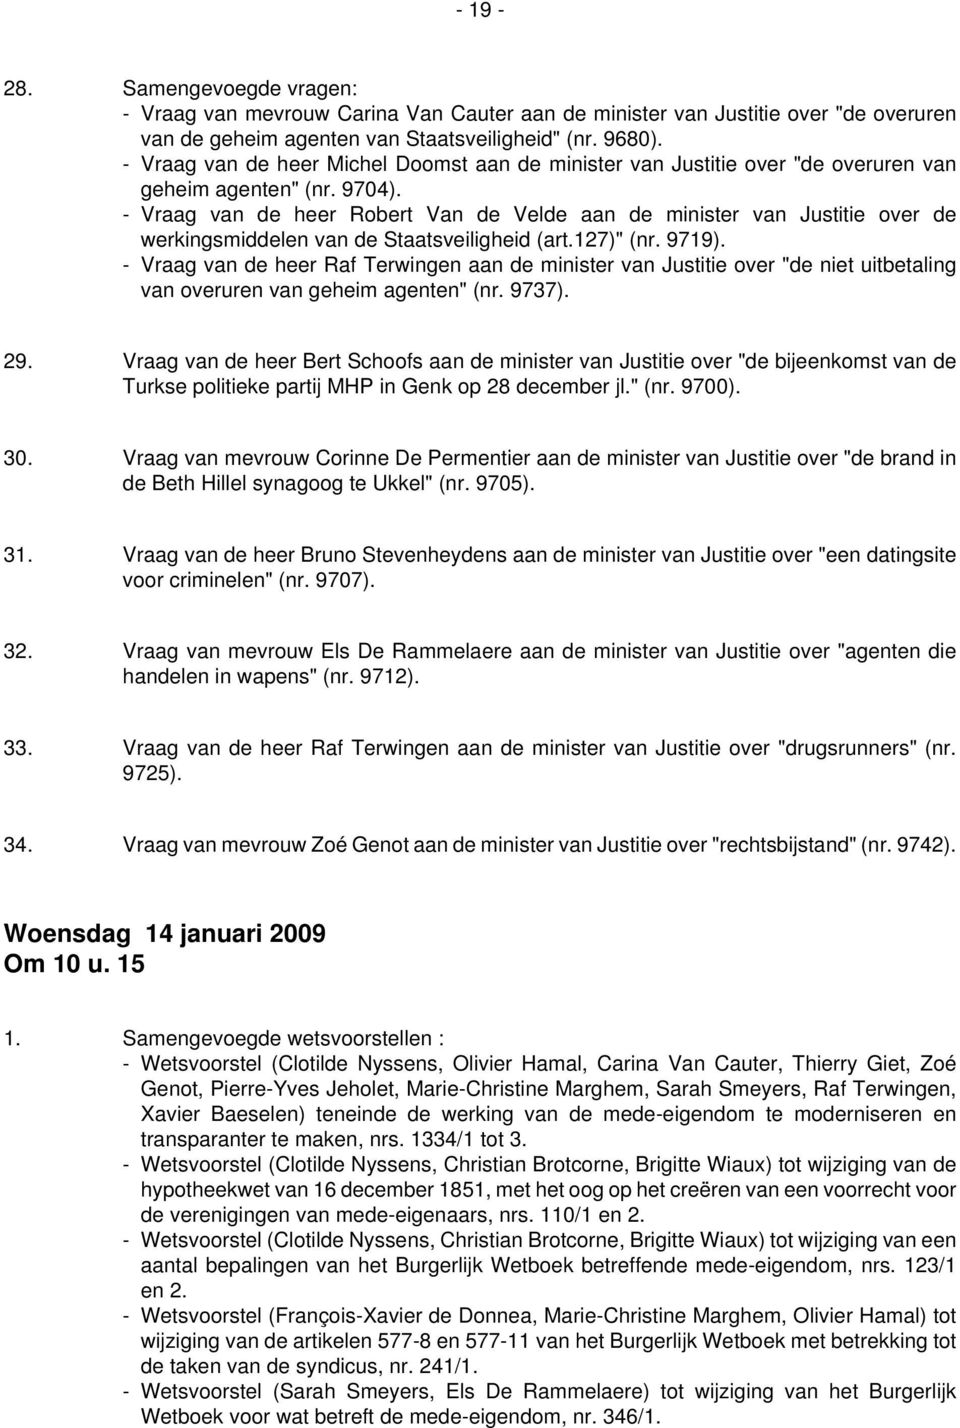 - Vraag van de heer Robert Van de Velde aan de minister van Justitie over de werkingsmiddelen van de Staatsveiligheid (art.127)" (nr. 9719).